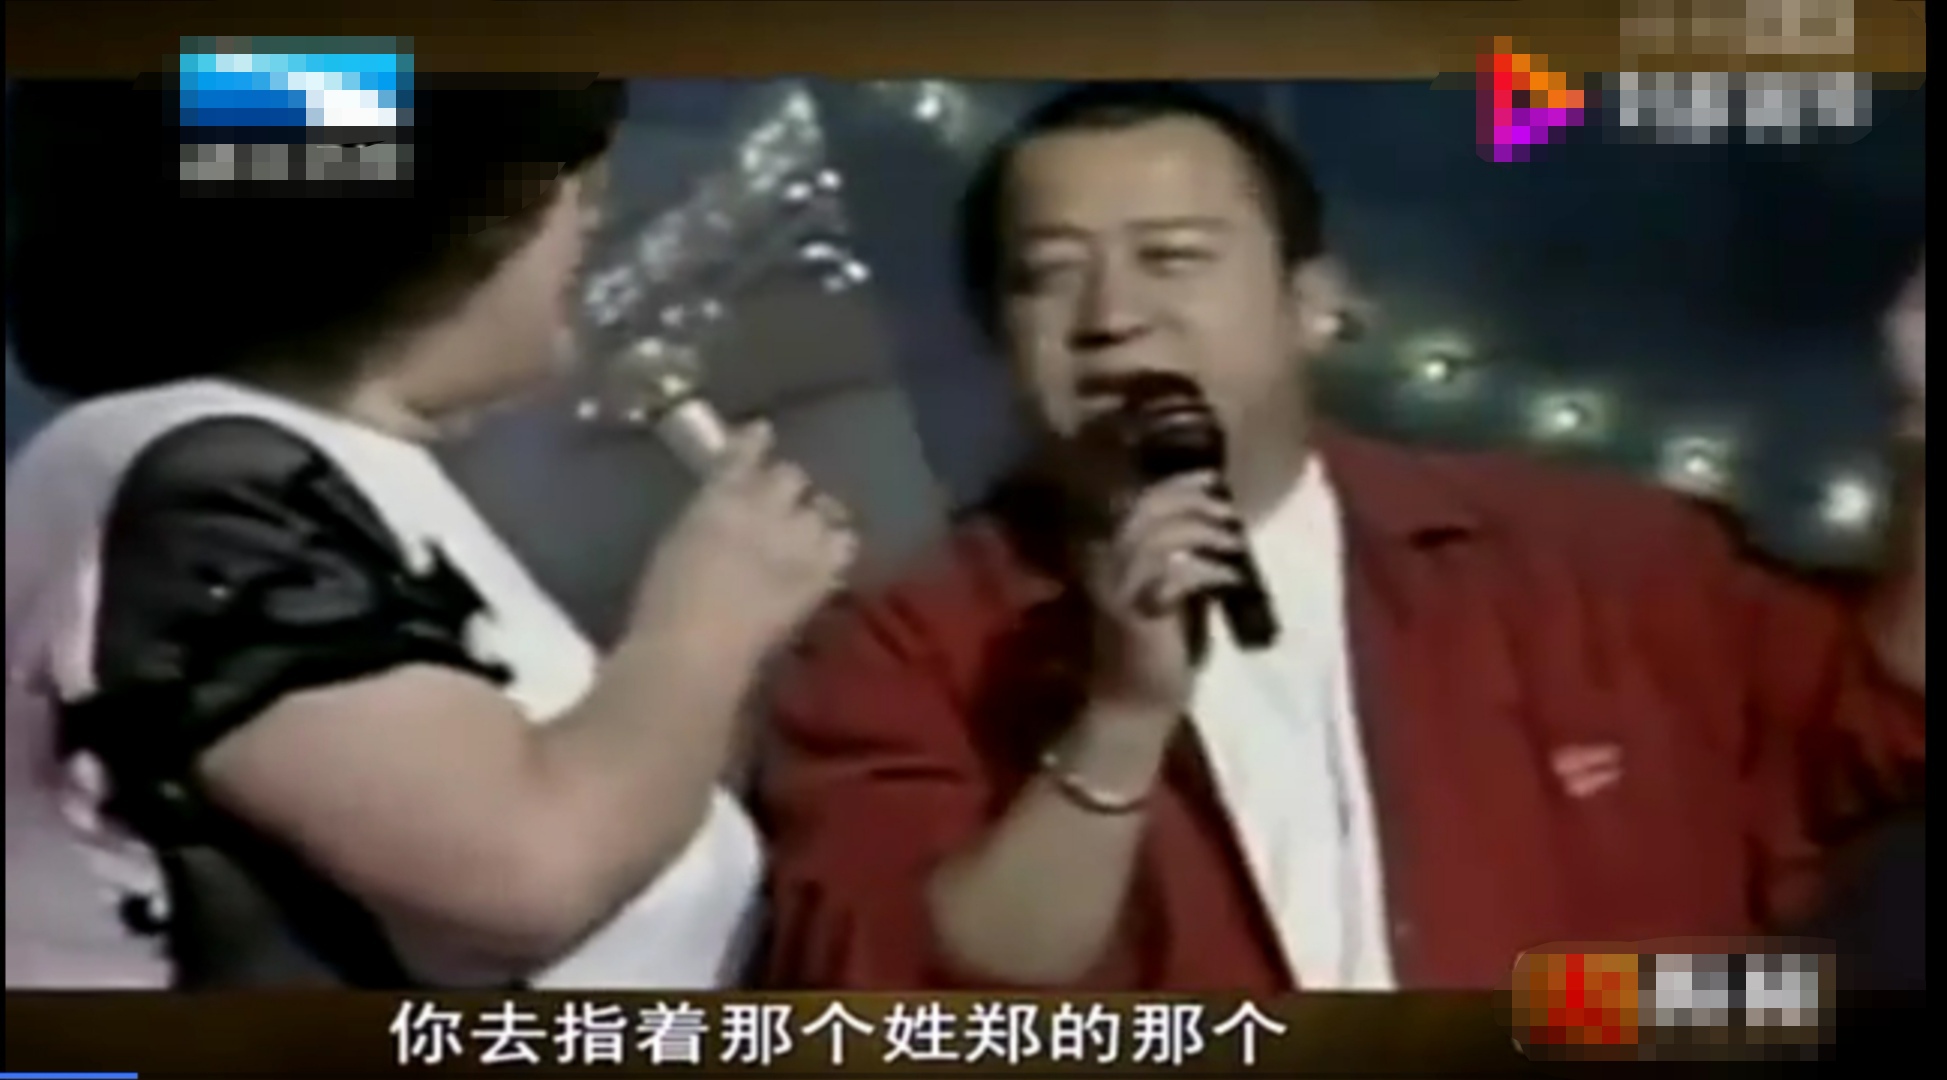 在香港回归一周年的晚会上,曾志伟与沈殿霞合唱《心太软》时,他问